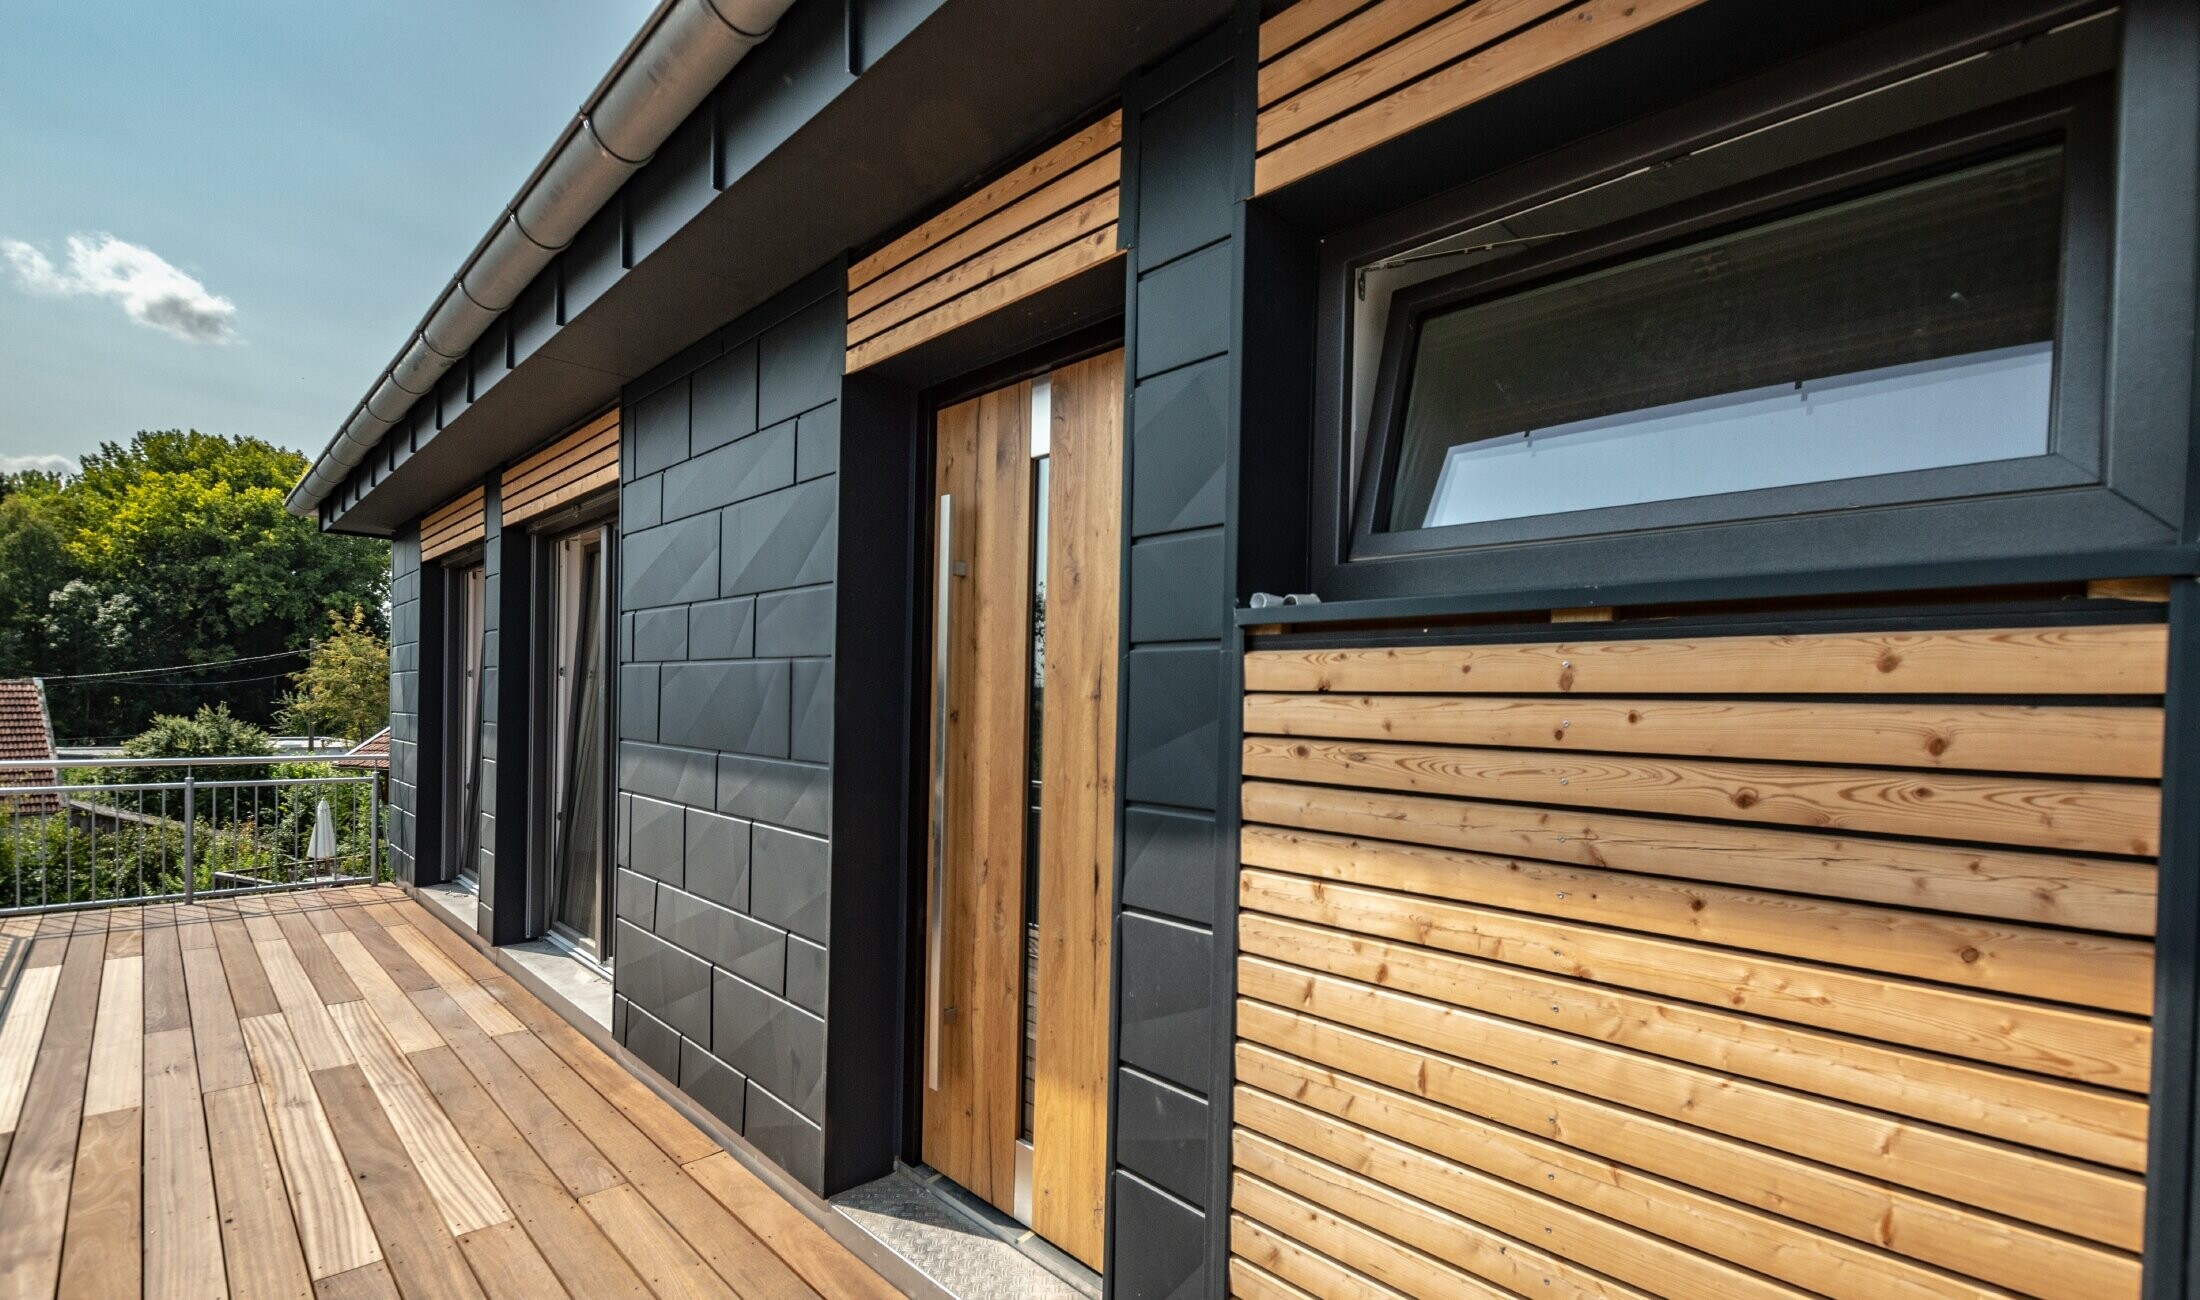 Design della facciata con combinazione di materiali alluminio - PREFA doga.X in antracite - e modanature orizzontali in legno.